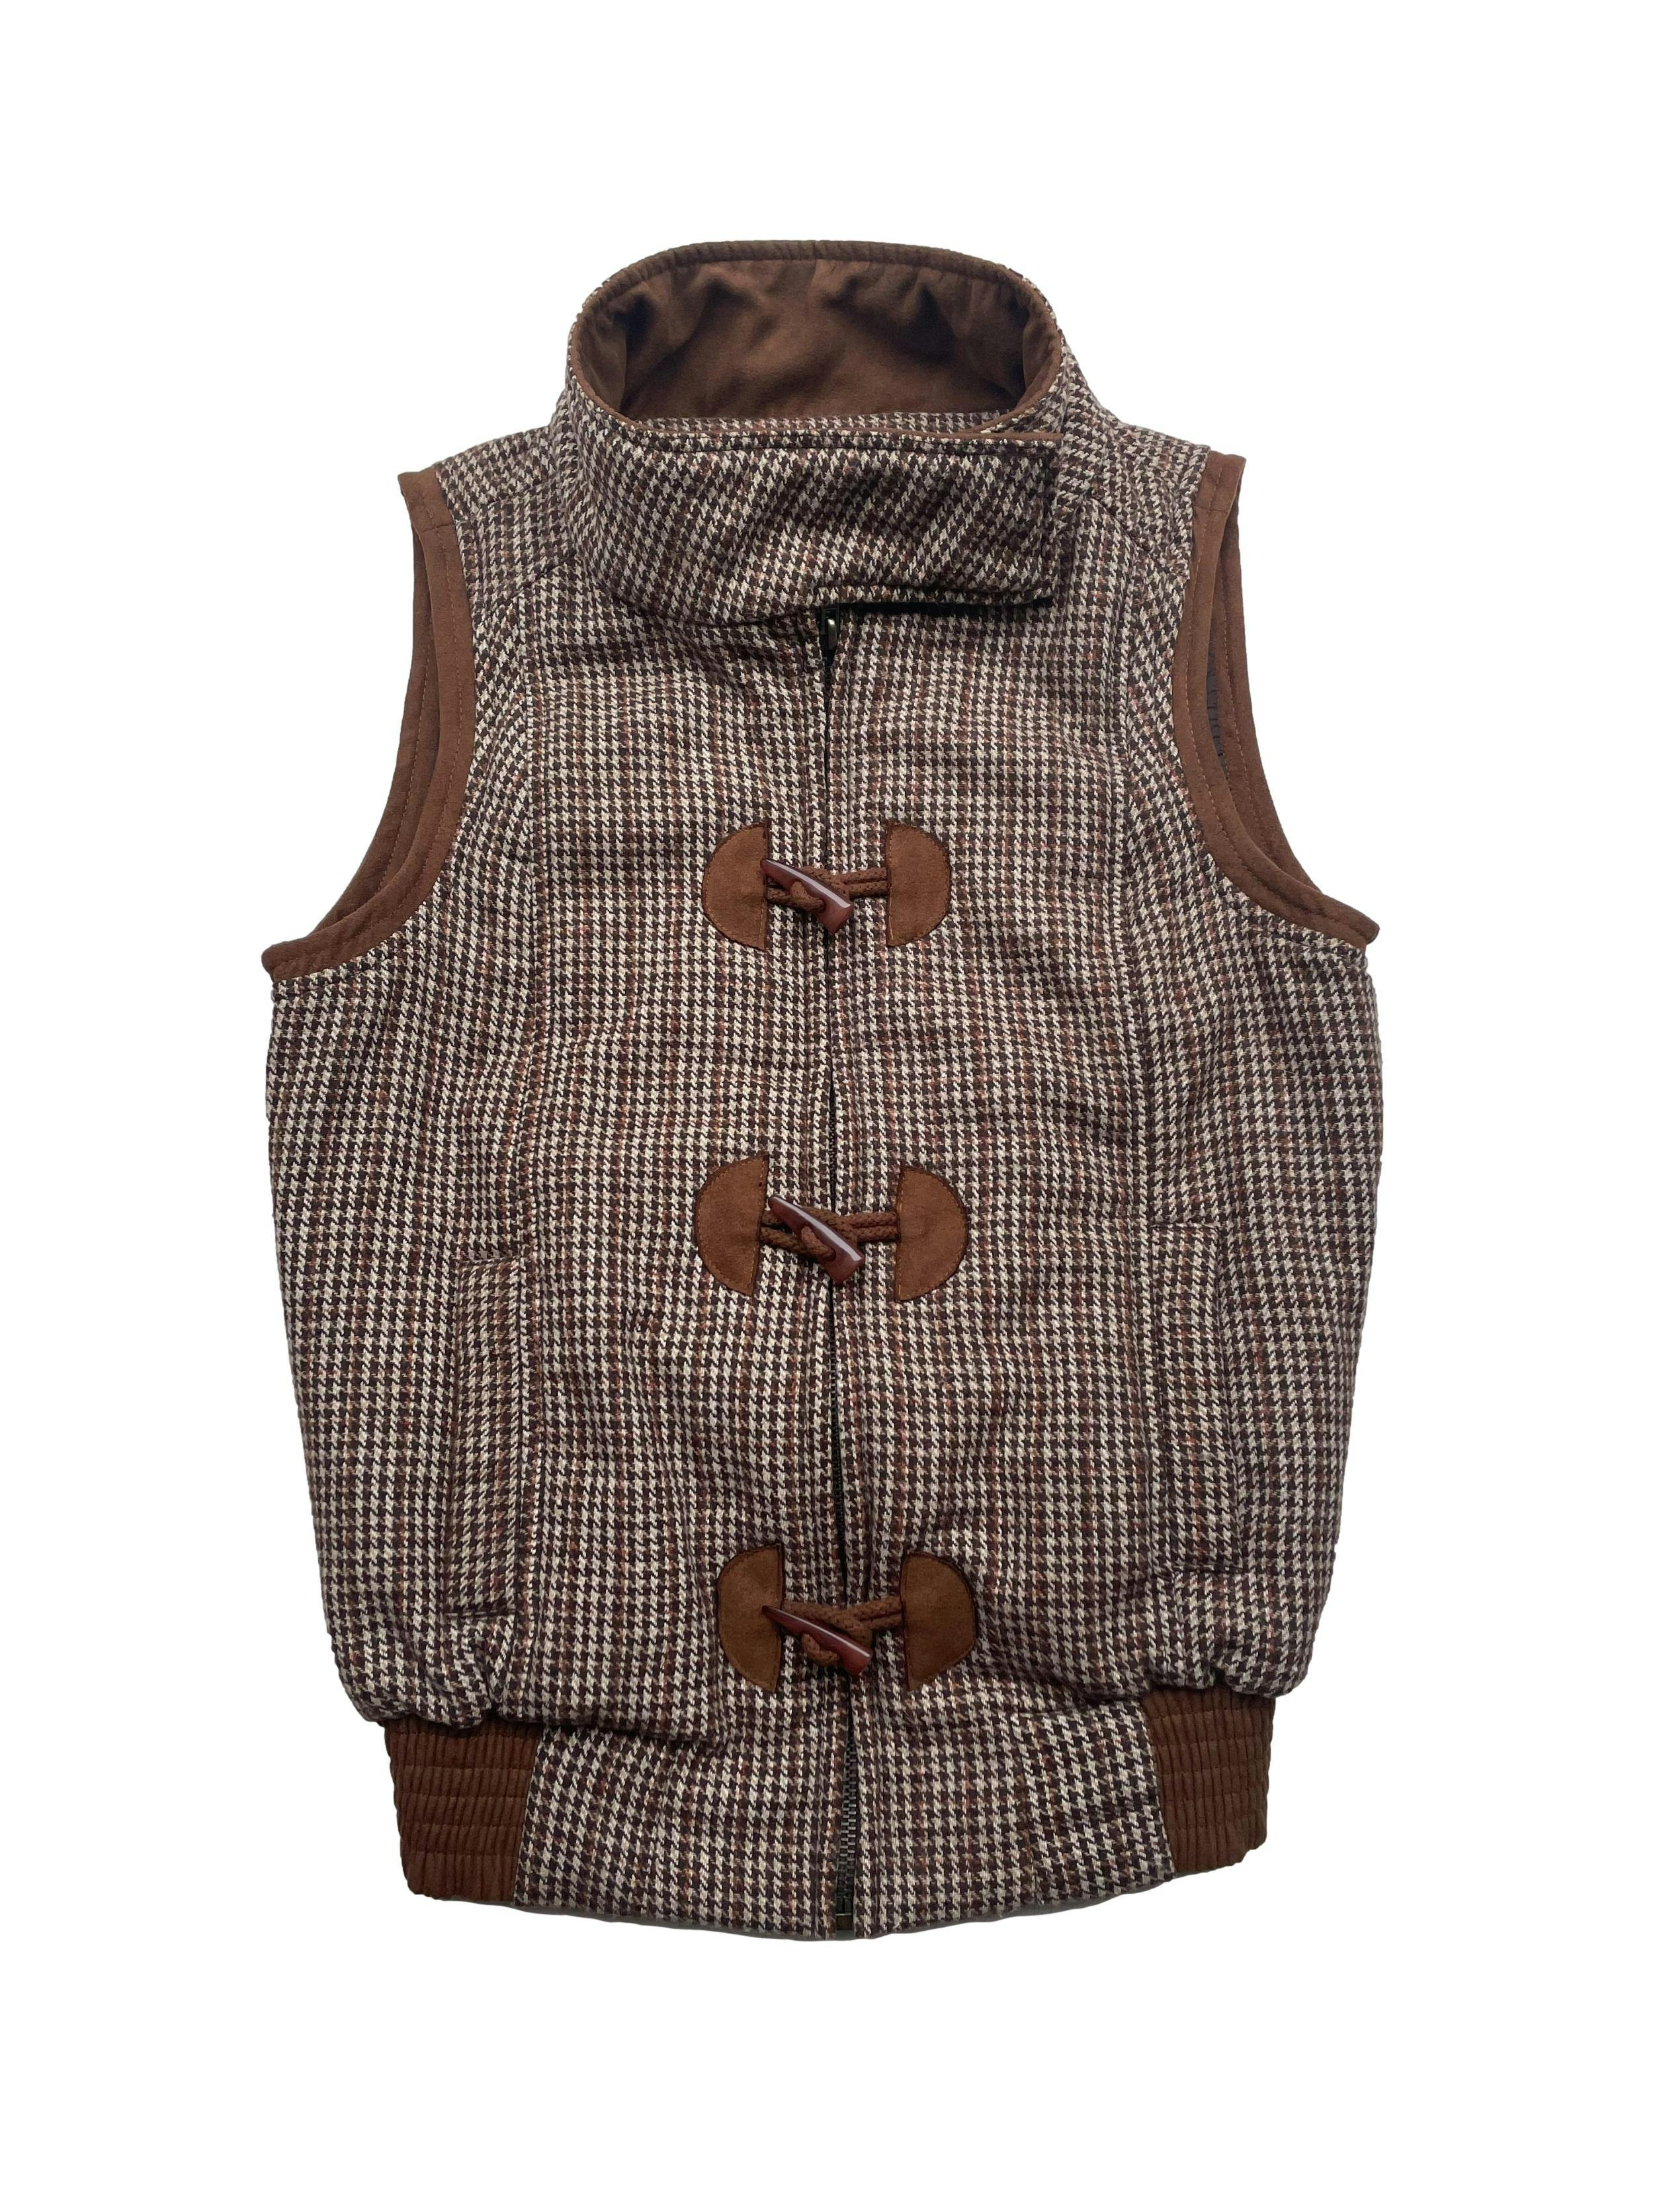 Chaleco Savanah marrón con crema, tela tipo lanilla , ligeramente acolchada. Con bolsillos, botones tipo cacho y cierre. Largo 55cm.